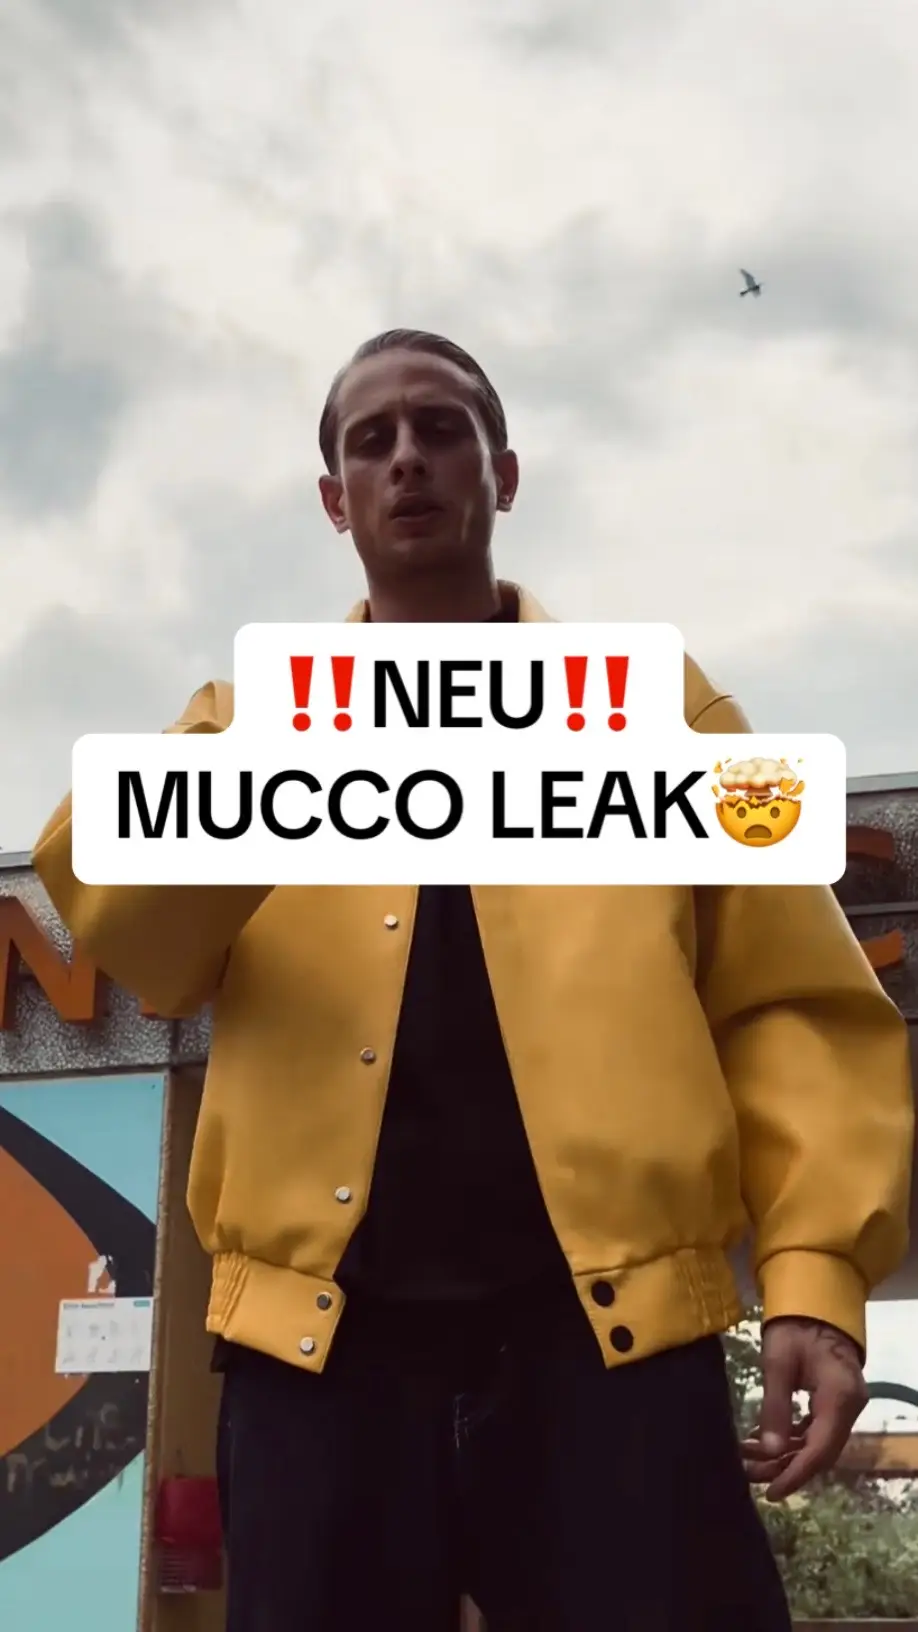 Der ZWEITE PART ist anders KRASS @MUCCO  #mucco #mannheim #mannheim68 #musso #deutschrapnews #unreleased #leakedmusic #leak #fyp #viral 